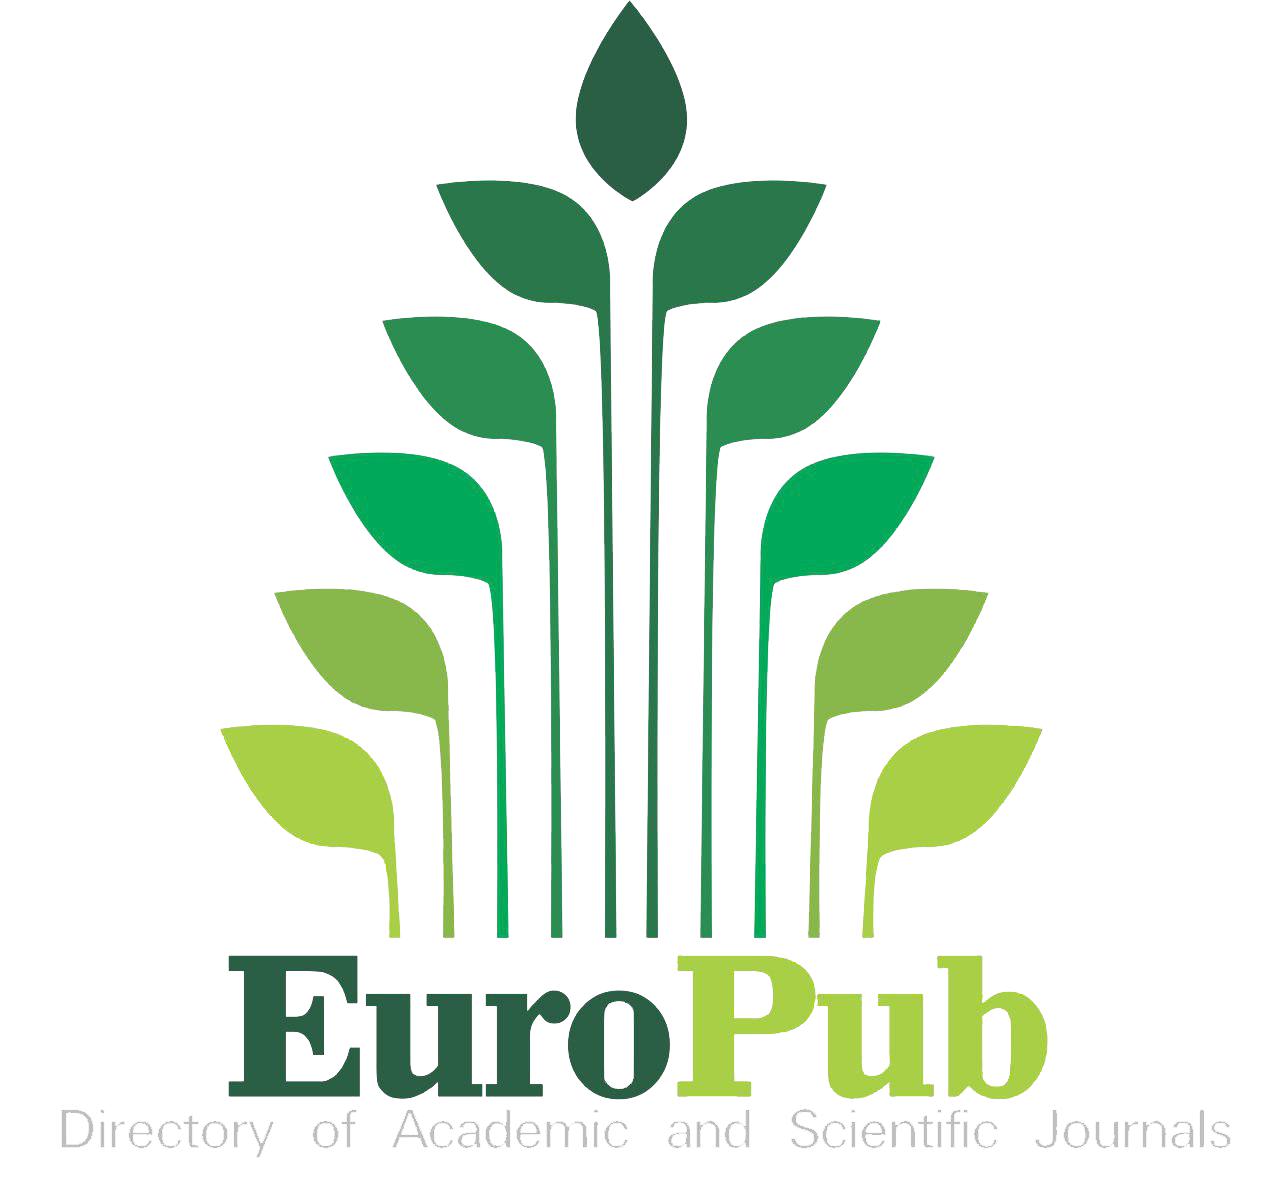 Logotipo do EuroPub com link externo para exibir a página da Revista no indexador